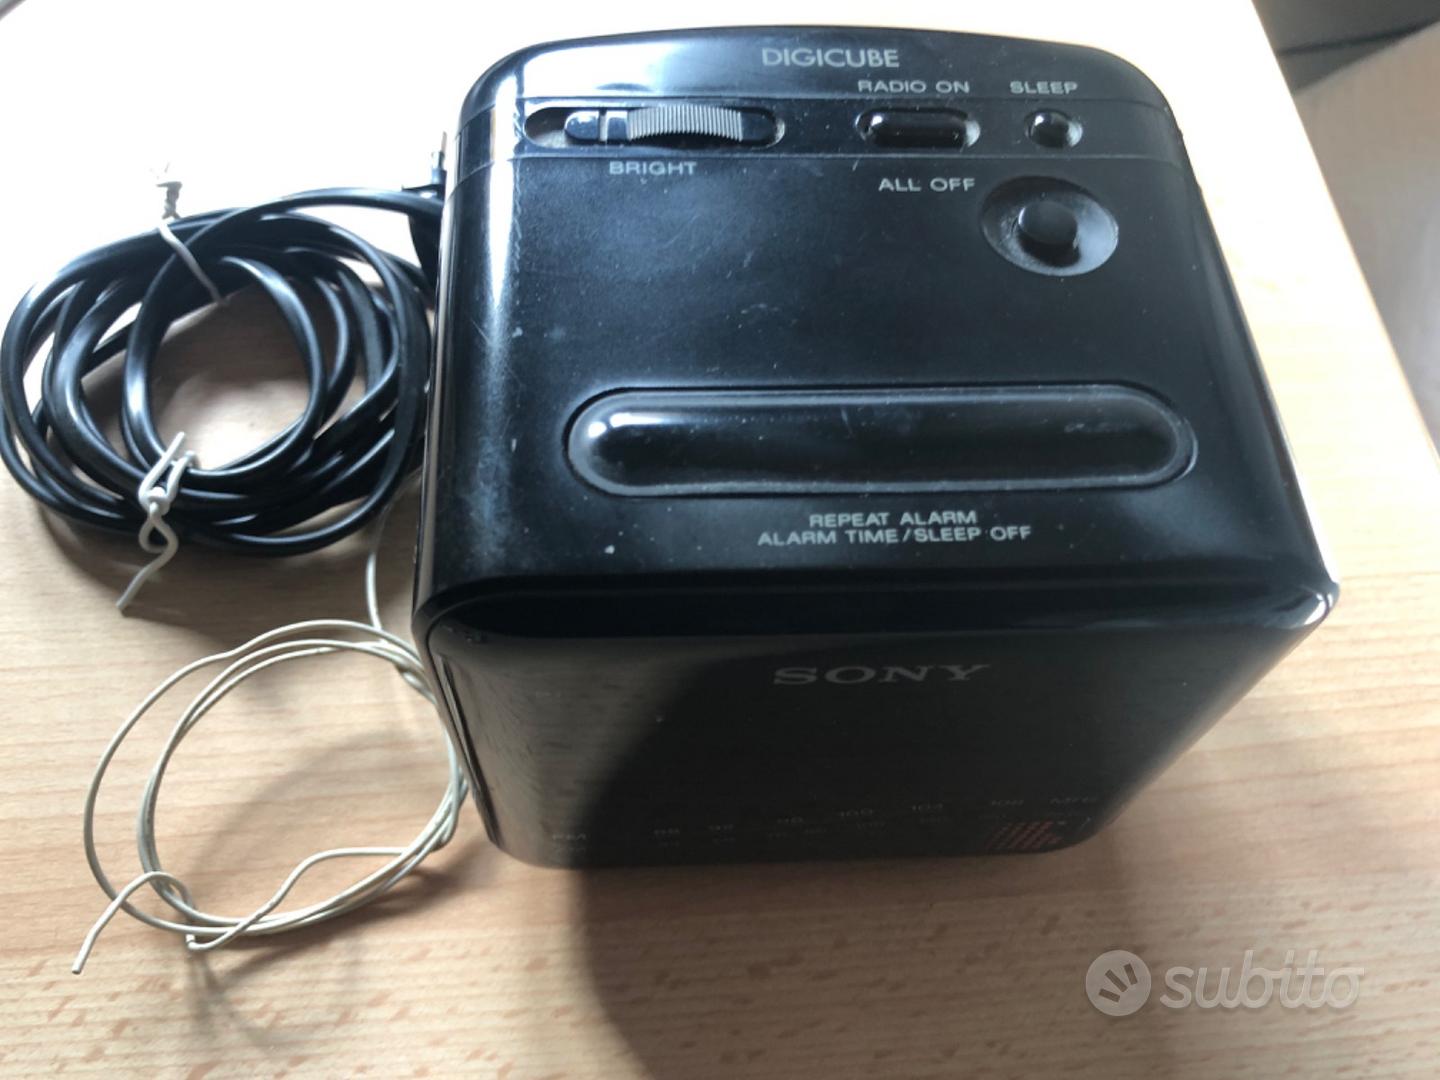 Sony digicube radiosveglia - Audio/Video In vendita a Torino